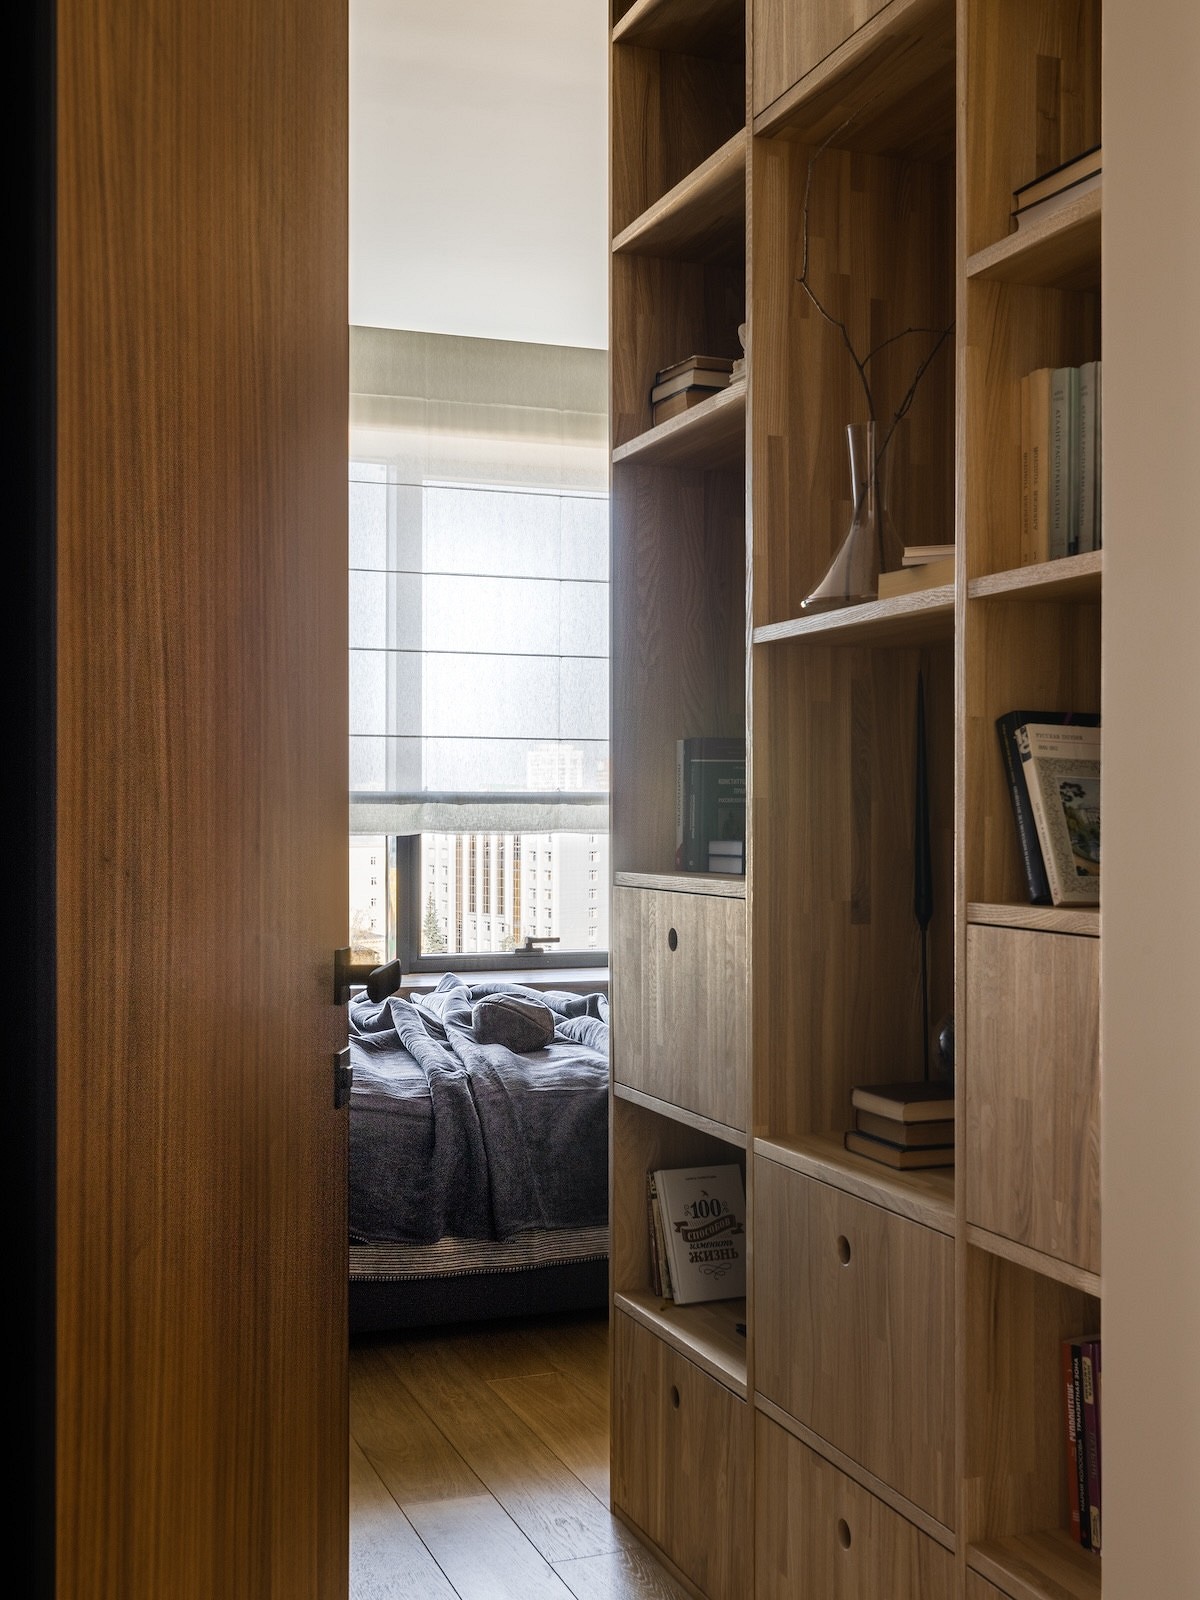 Квартира 82 кв. м для семьи со взрослыми детьми: минималистичный и роскошный интерьер 26